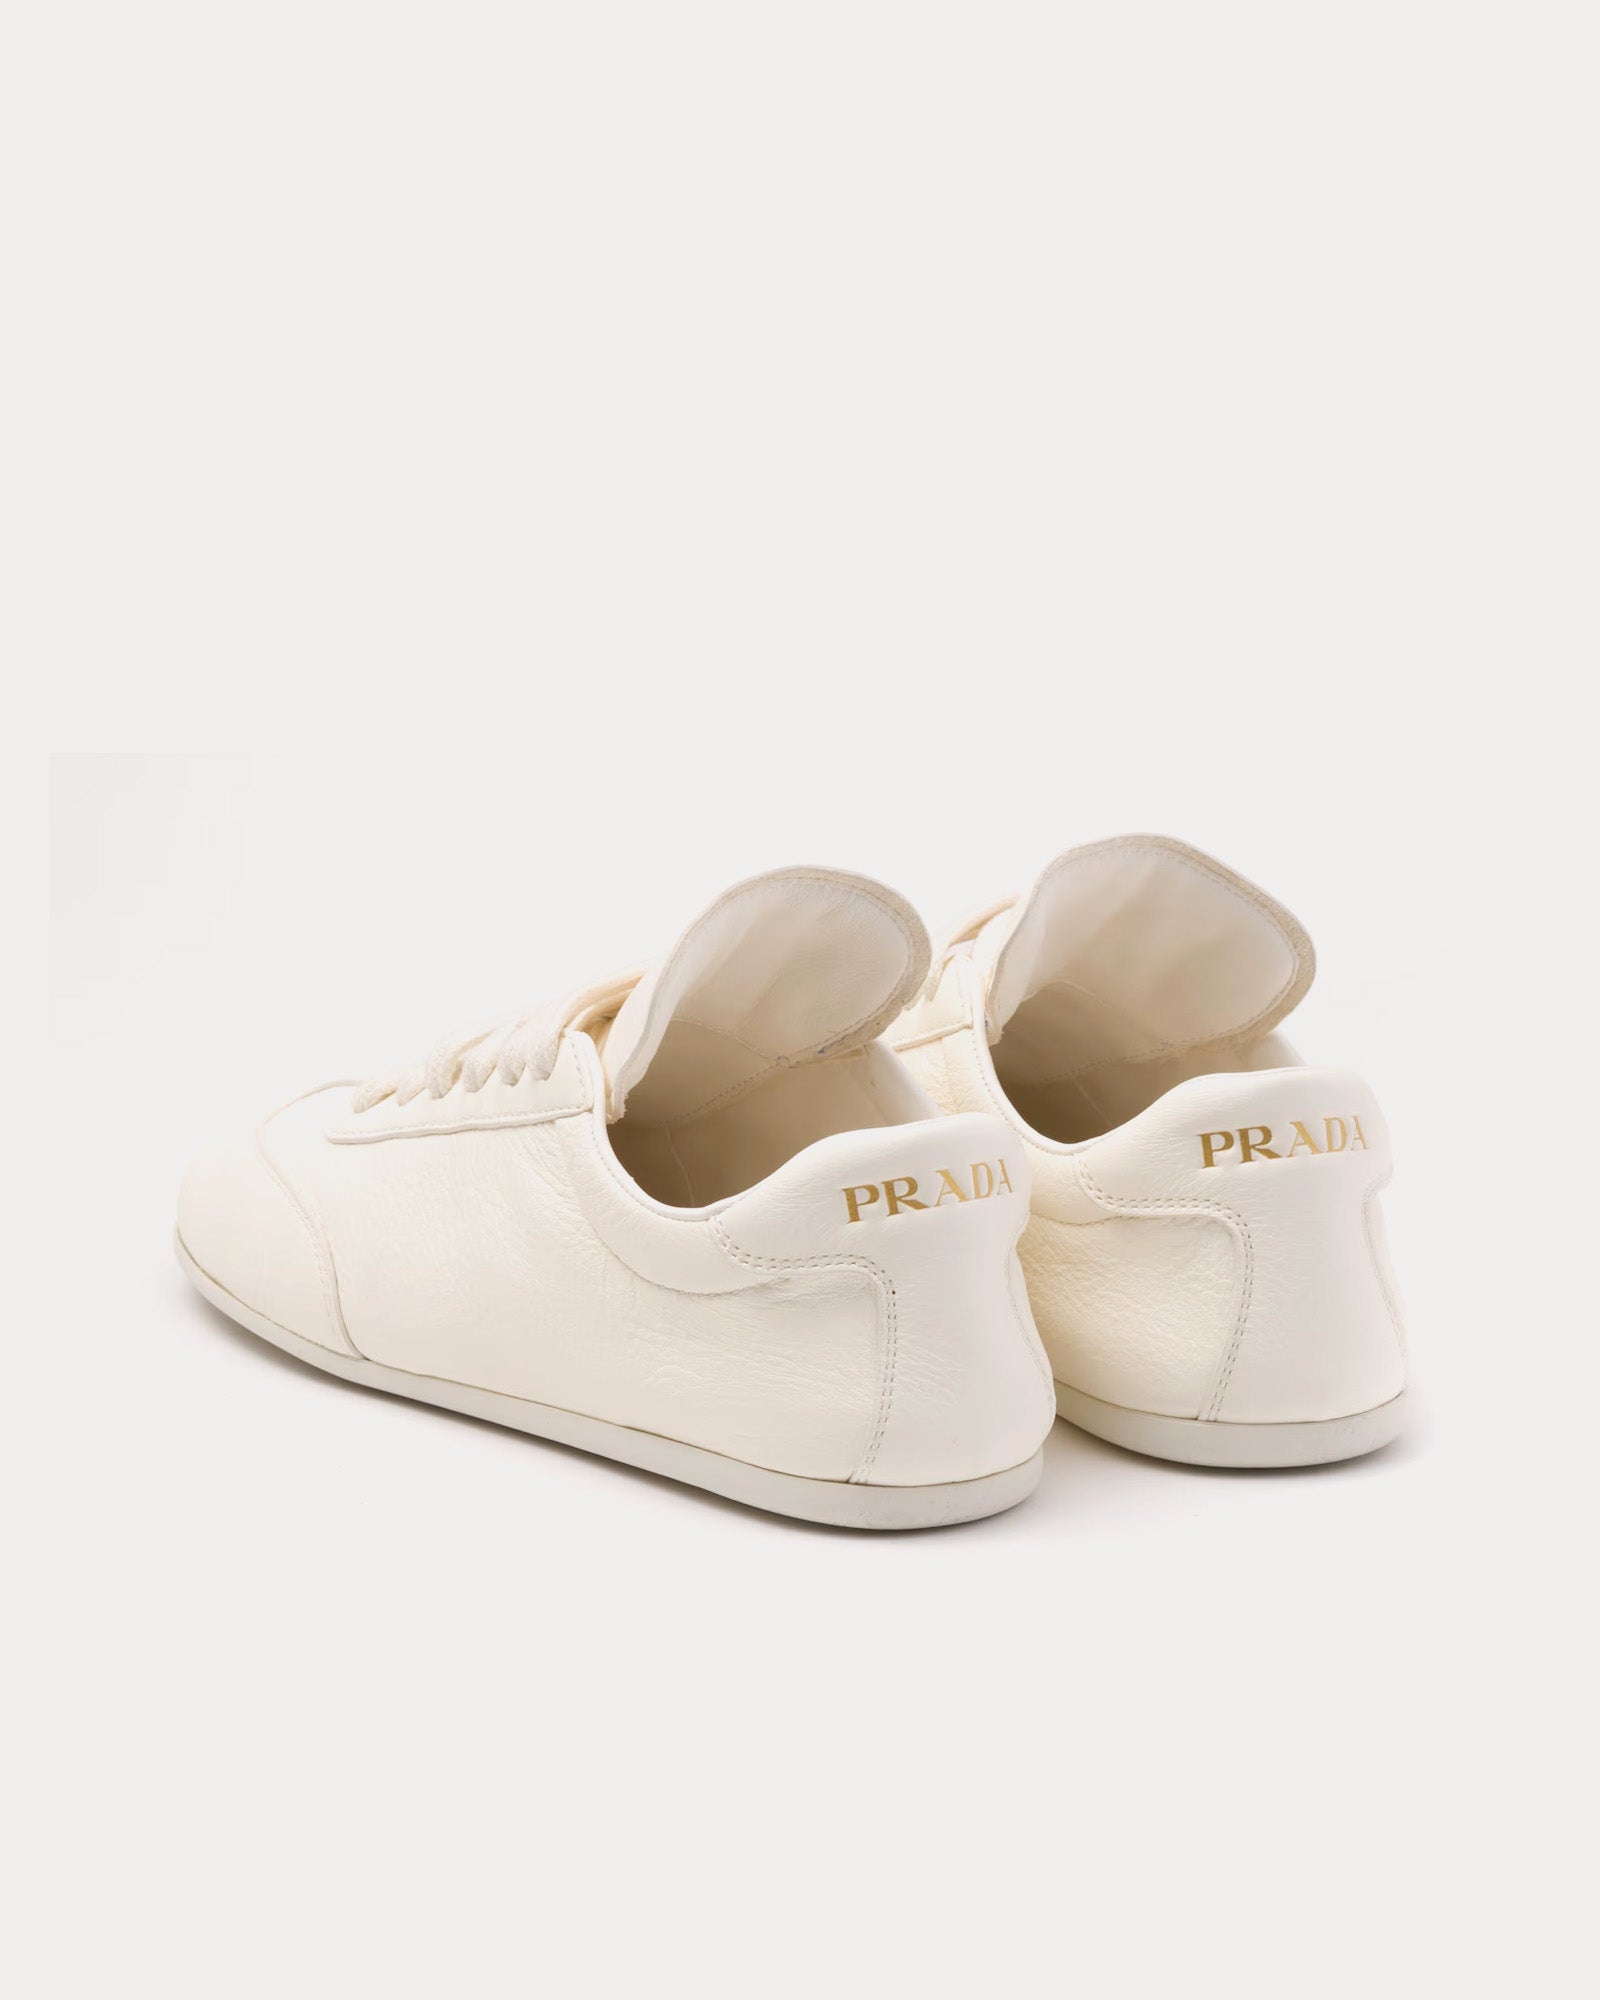 Prada - Deer Leather Ivory Low Top Sneakers